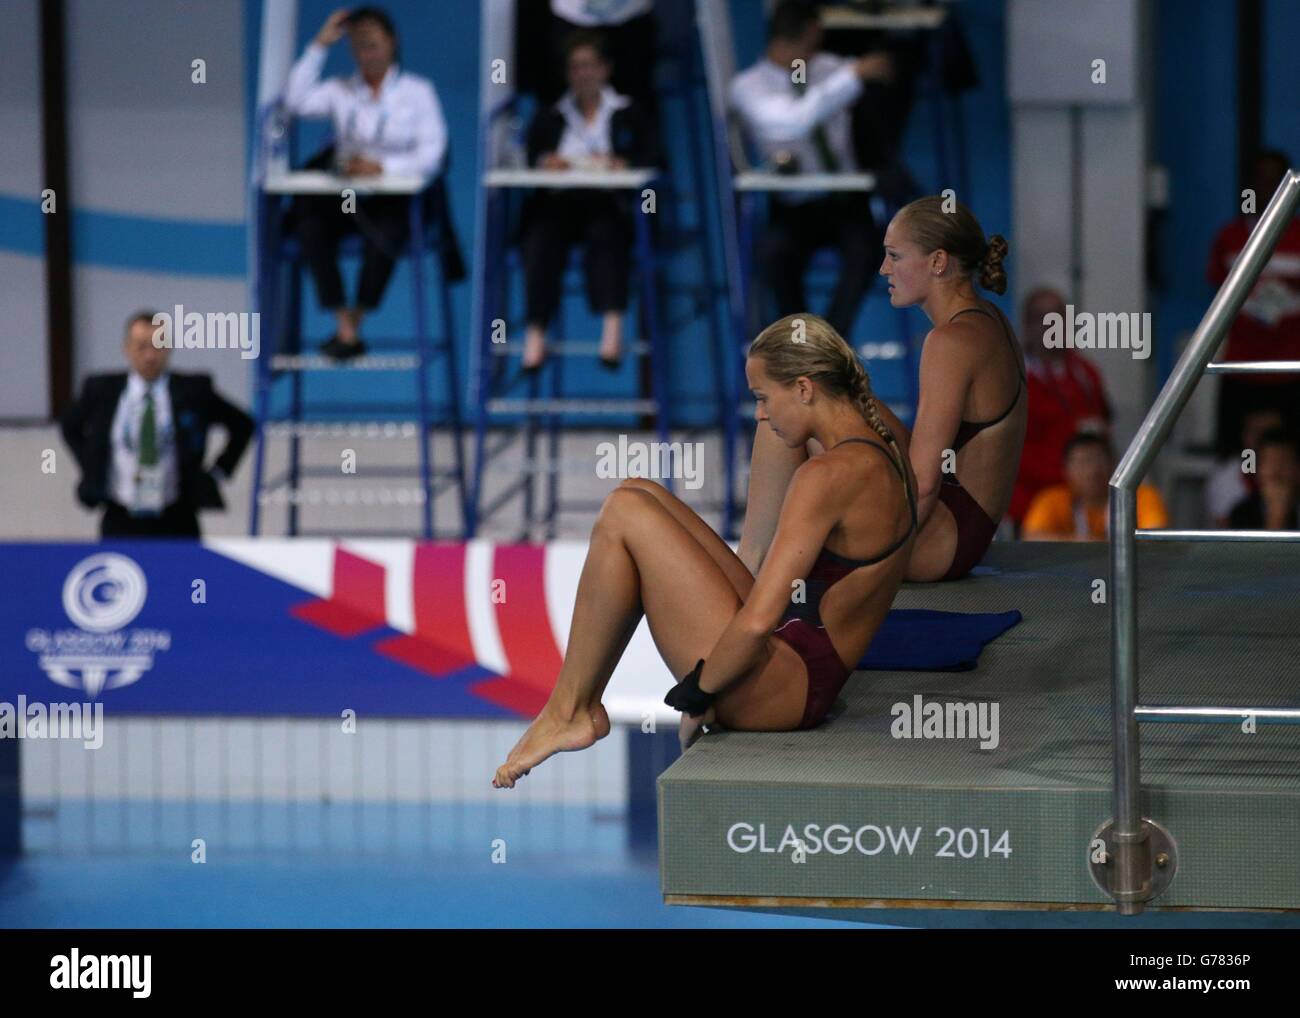 Deporte 2014 juegos de la commonwealth, día siete fotografías e imágenes de  alta resolución - Página 5 - Alamy